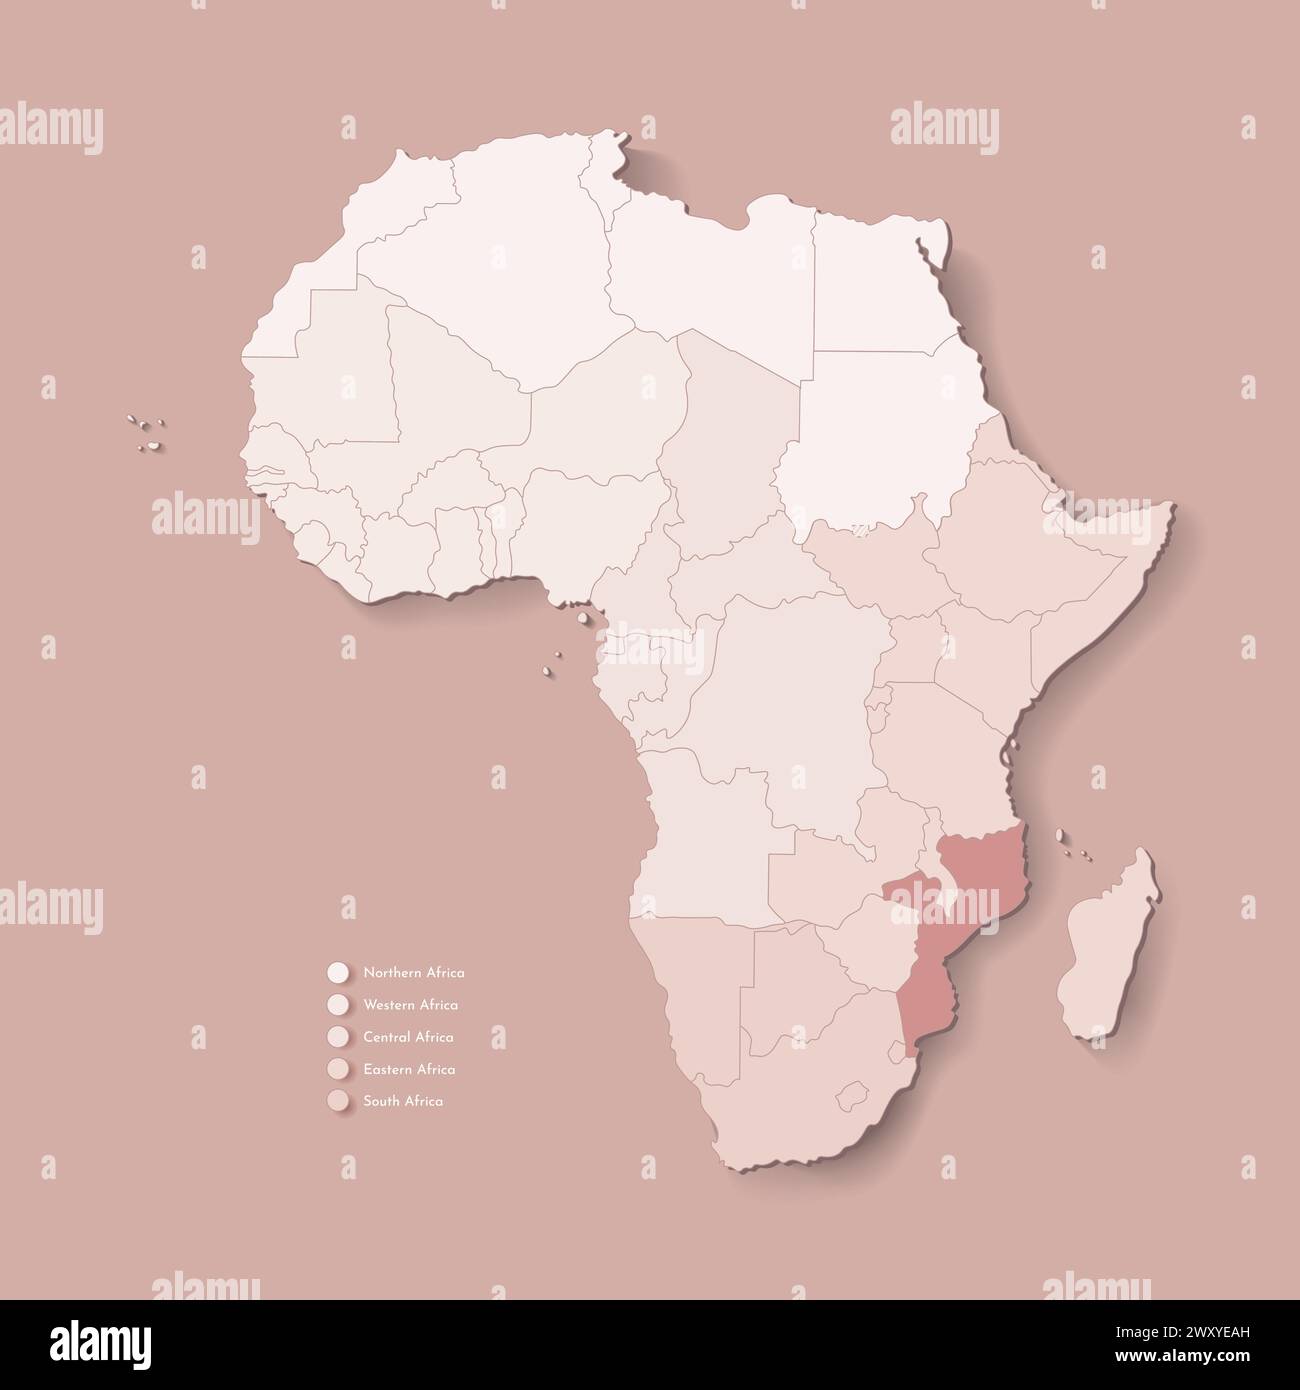 Illustrazione vettoriale con continente africano con confini di tutti gli stati e paese marcato Mozambico. Mappa politica di colore marrone con occidentale, sud Illustrazione Vettoriale